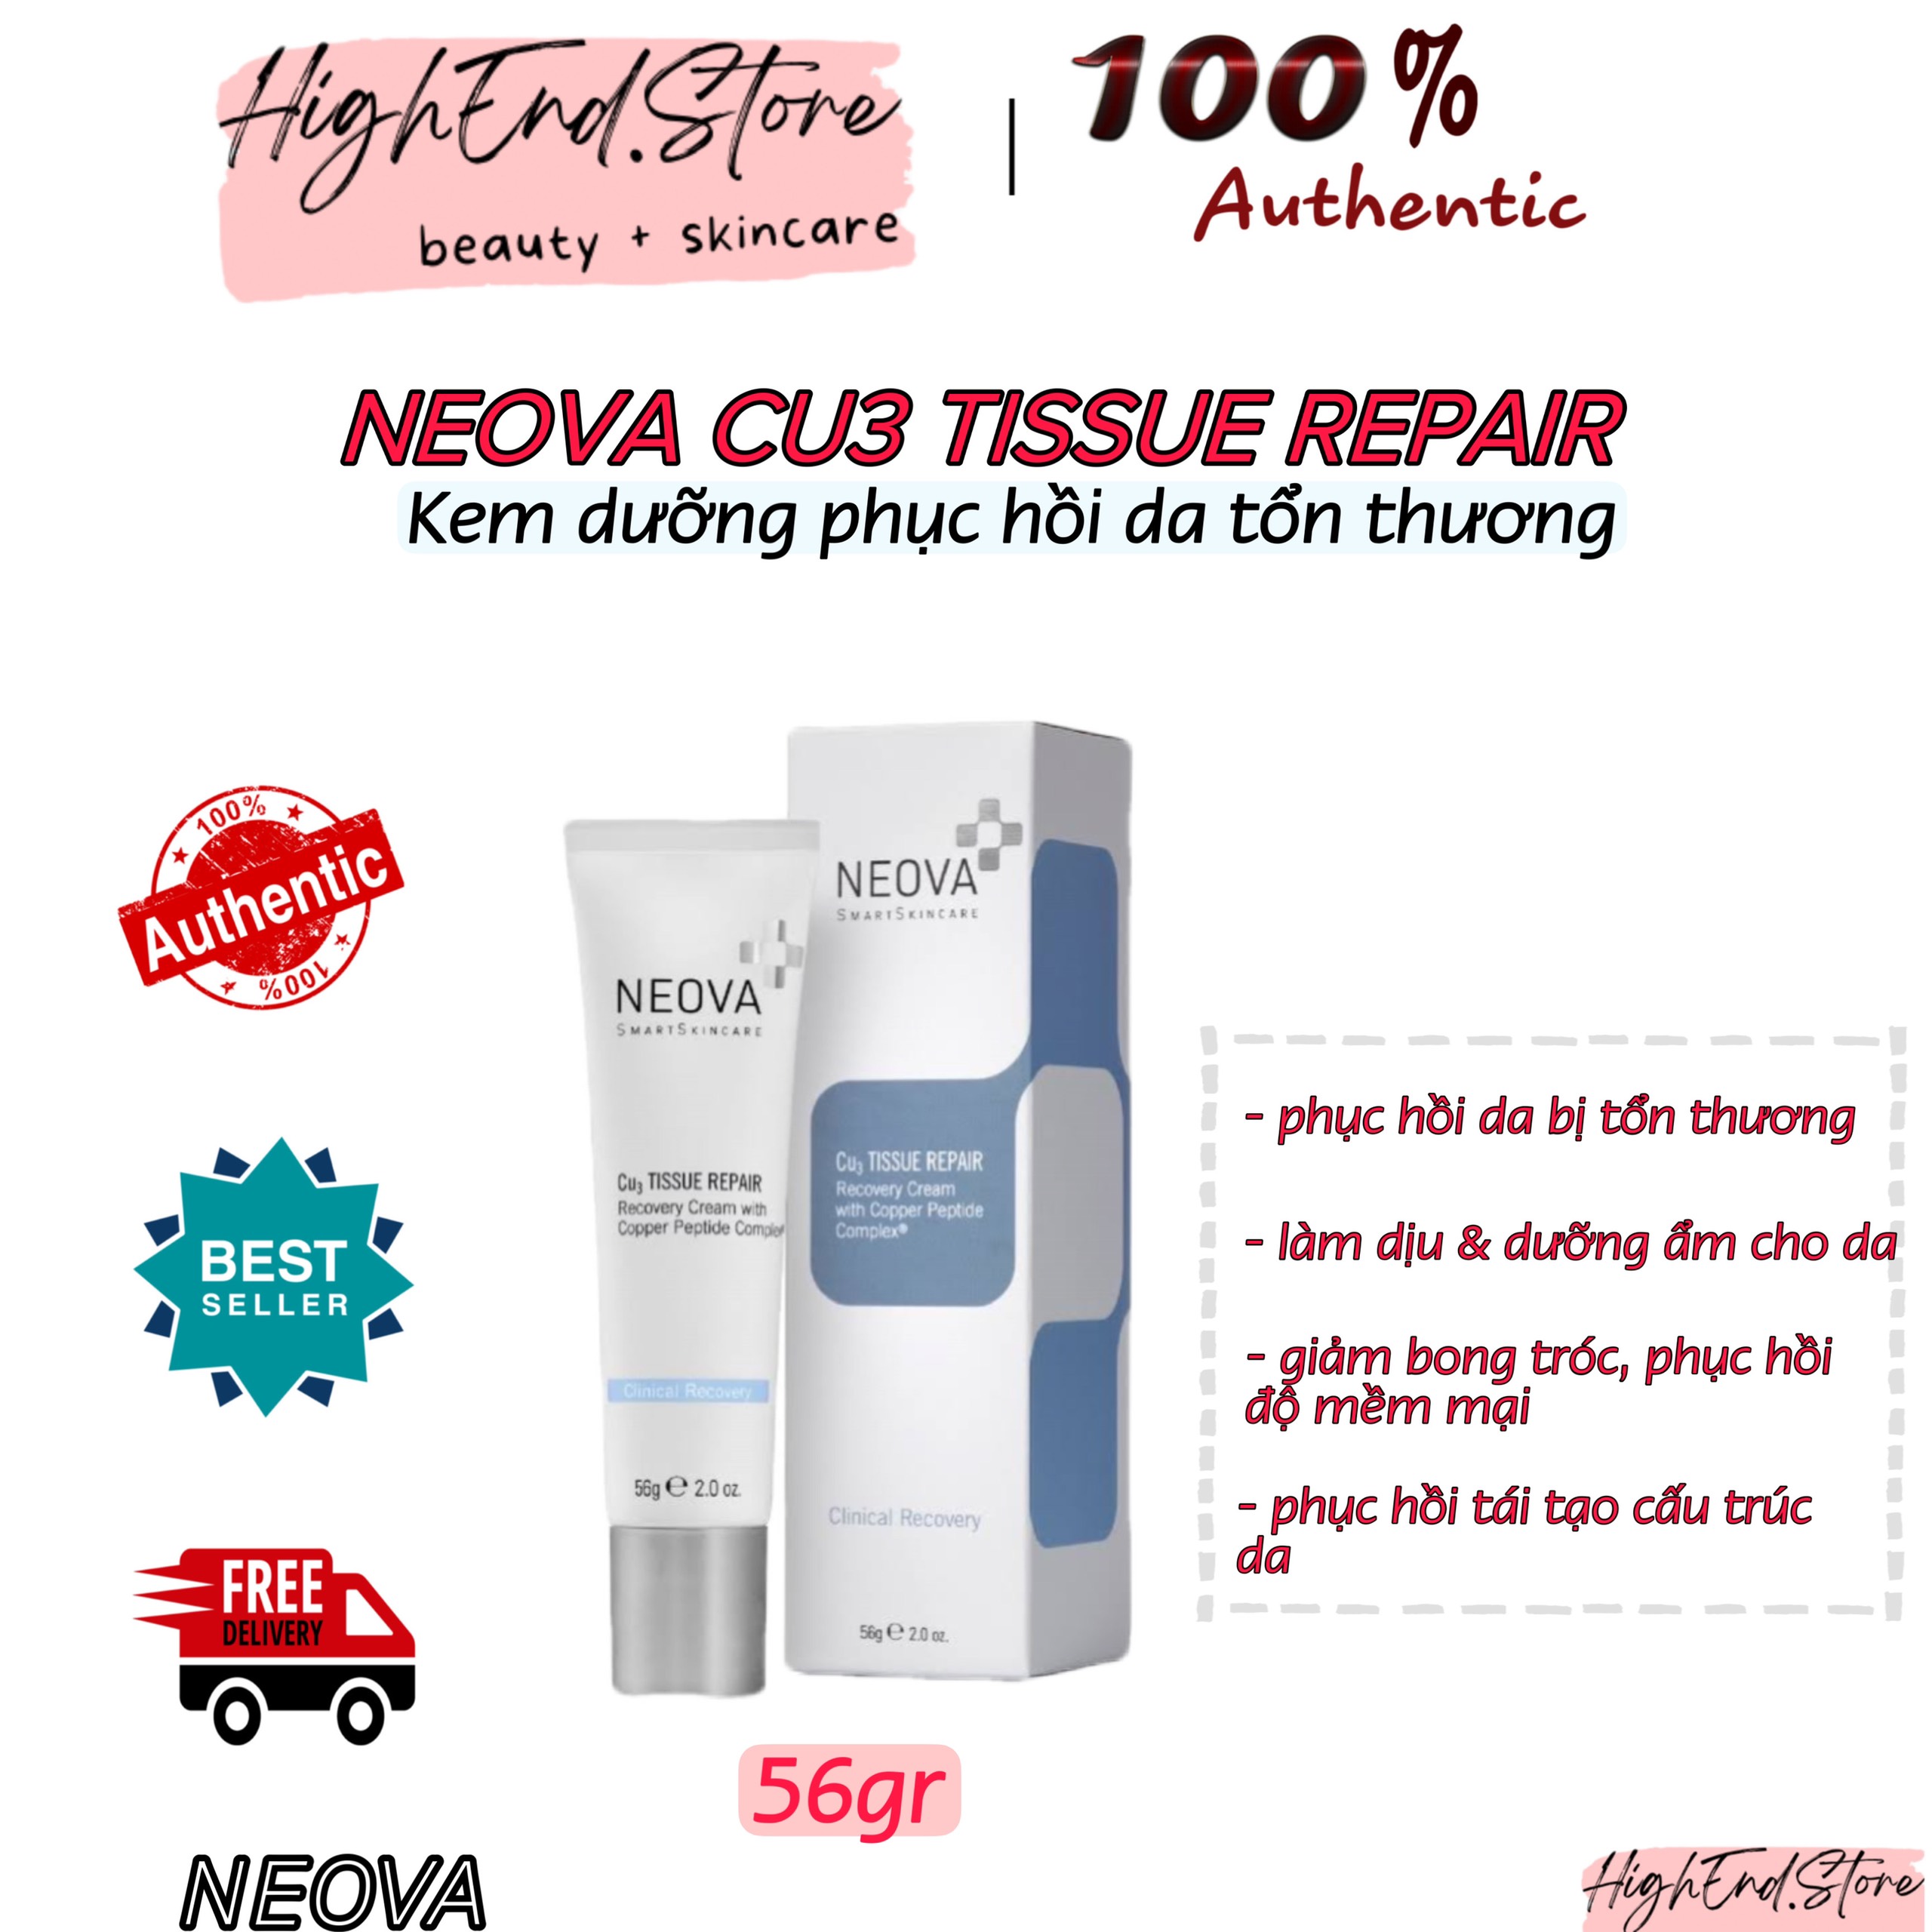 Kem Dưỡng Phục Hồi Neova Cu3 Tissue Repair Cream 56gr - HÀNG CÔNG TY thumbnail